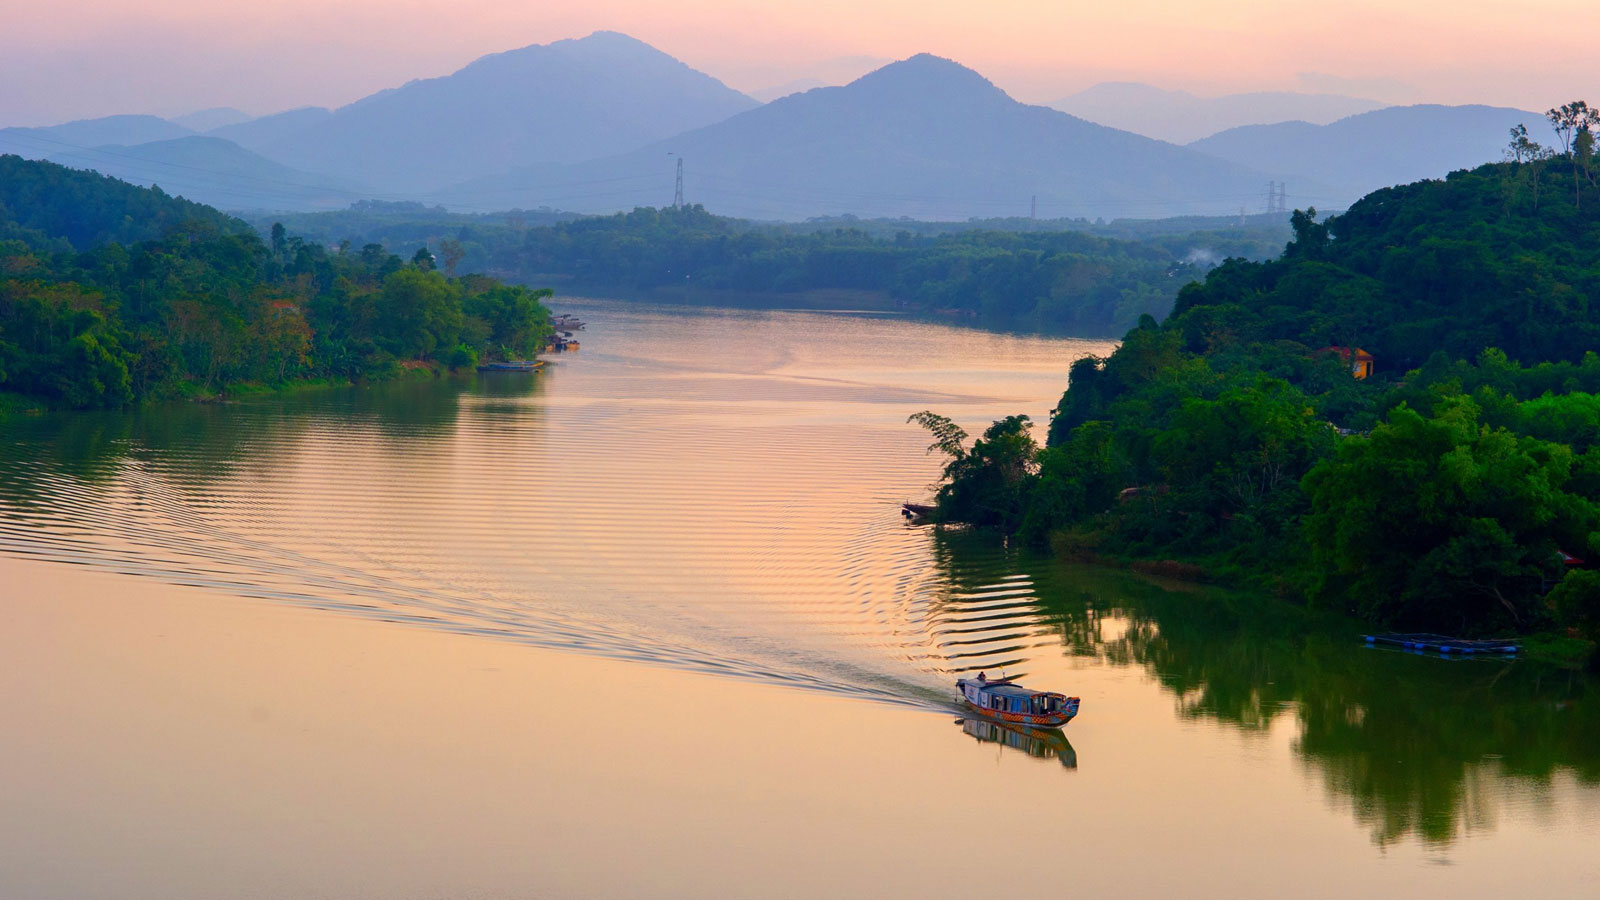 Ngắm sông Hương trên đồi Vọng Cảnh